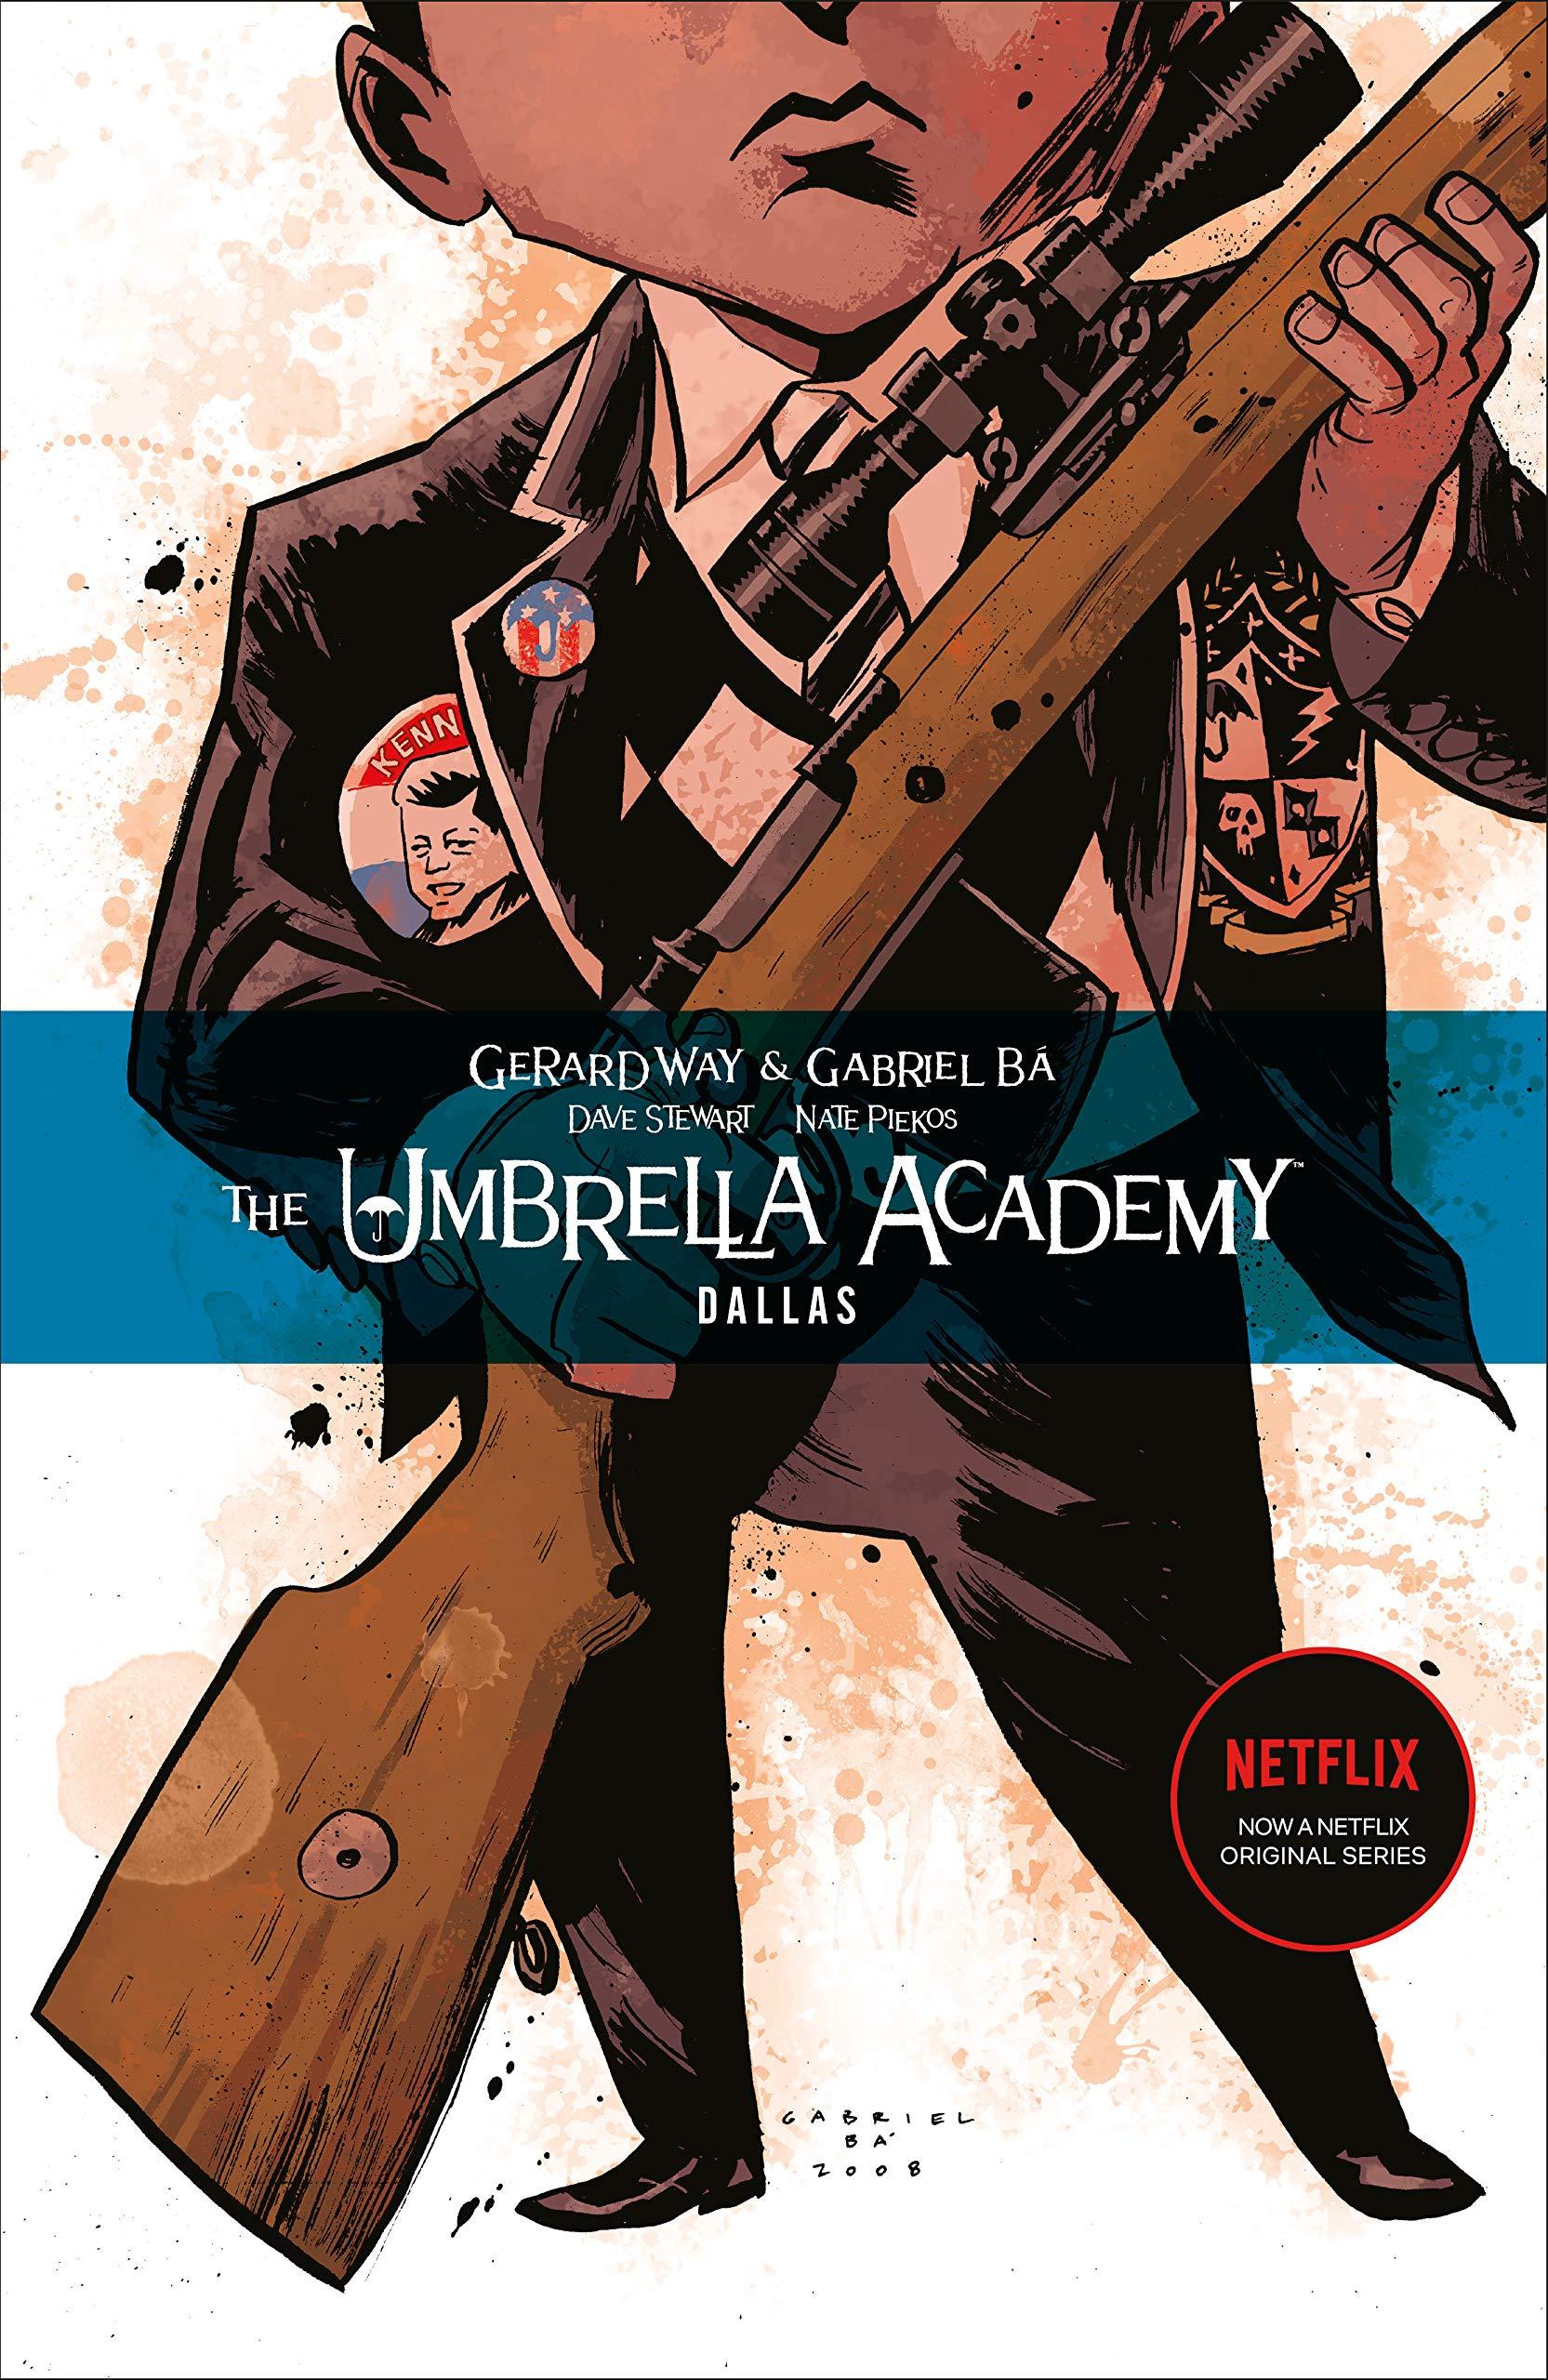 The Umbrella Academy: Dallas: Gerard Way, Gabriel Ba: 9781595823458